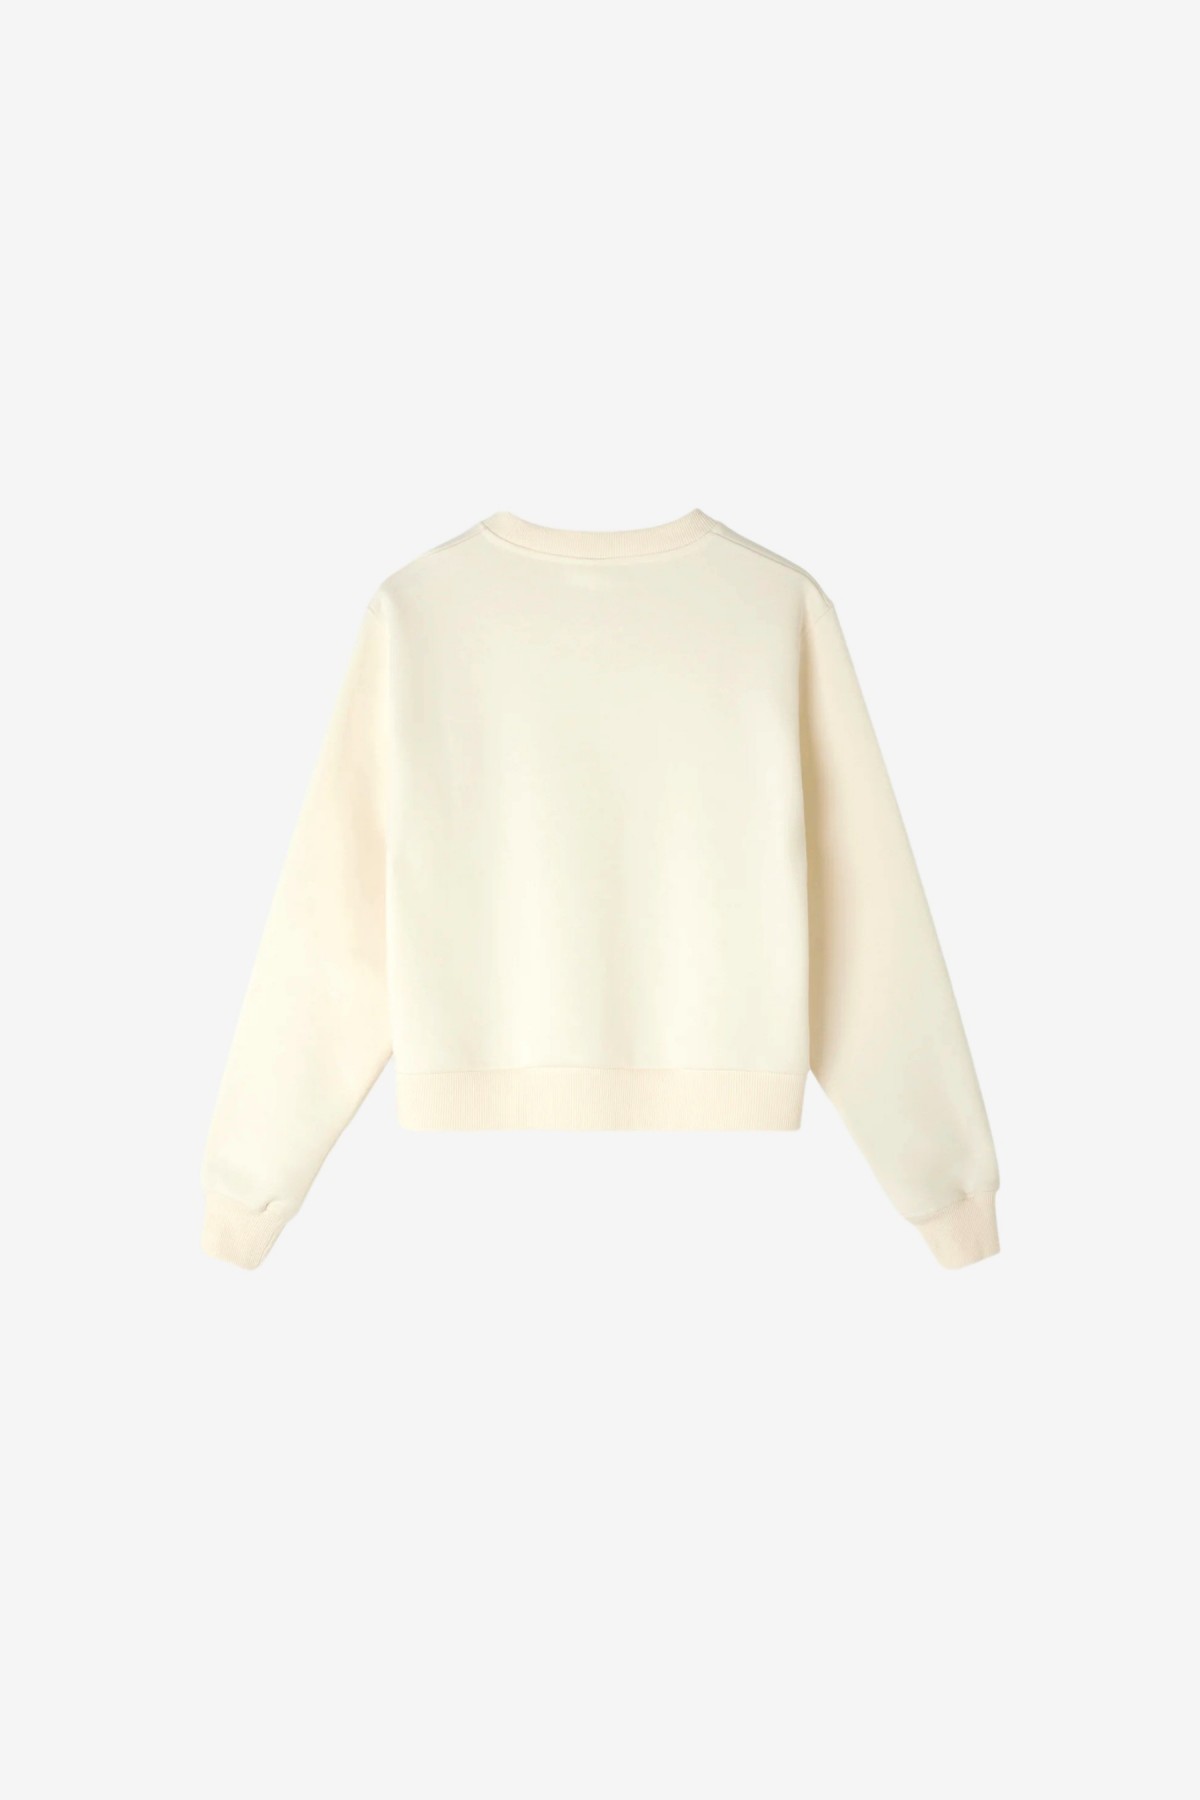 Soulland Joy Sweatshirt in Off White